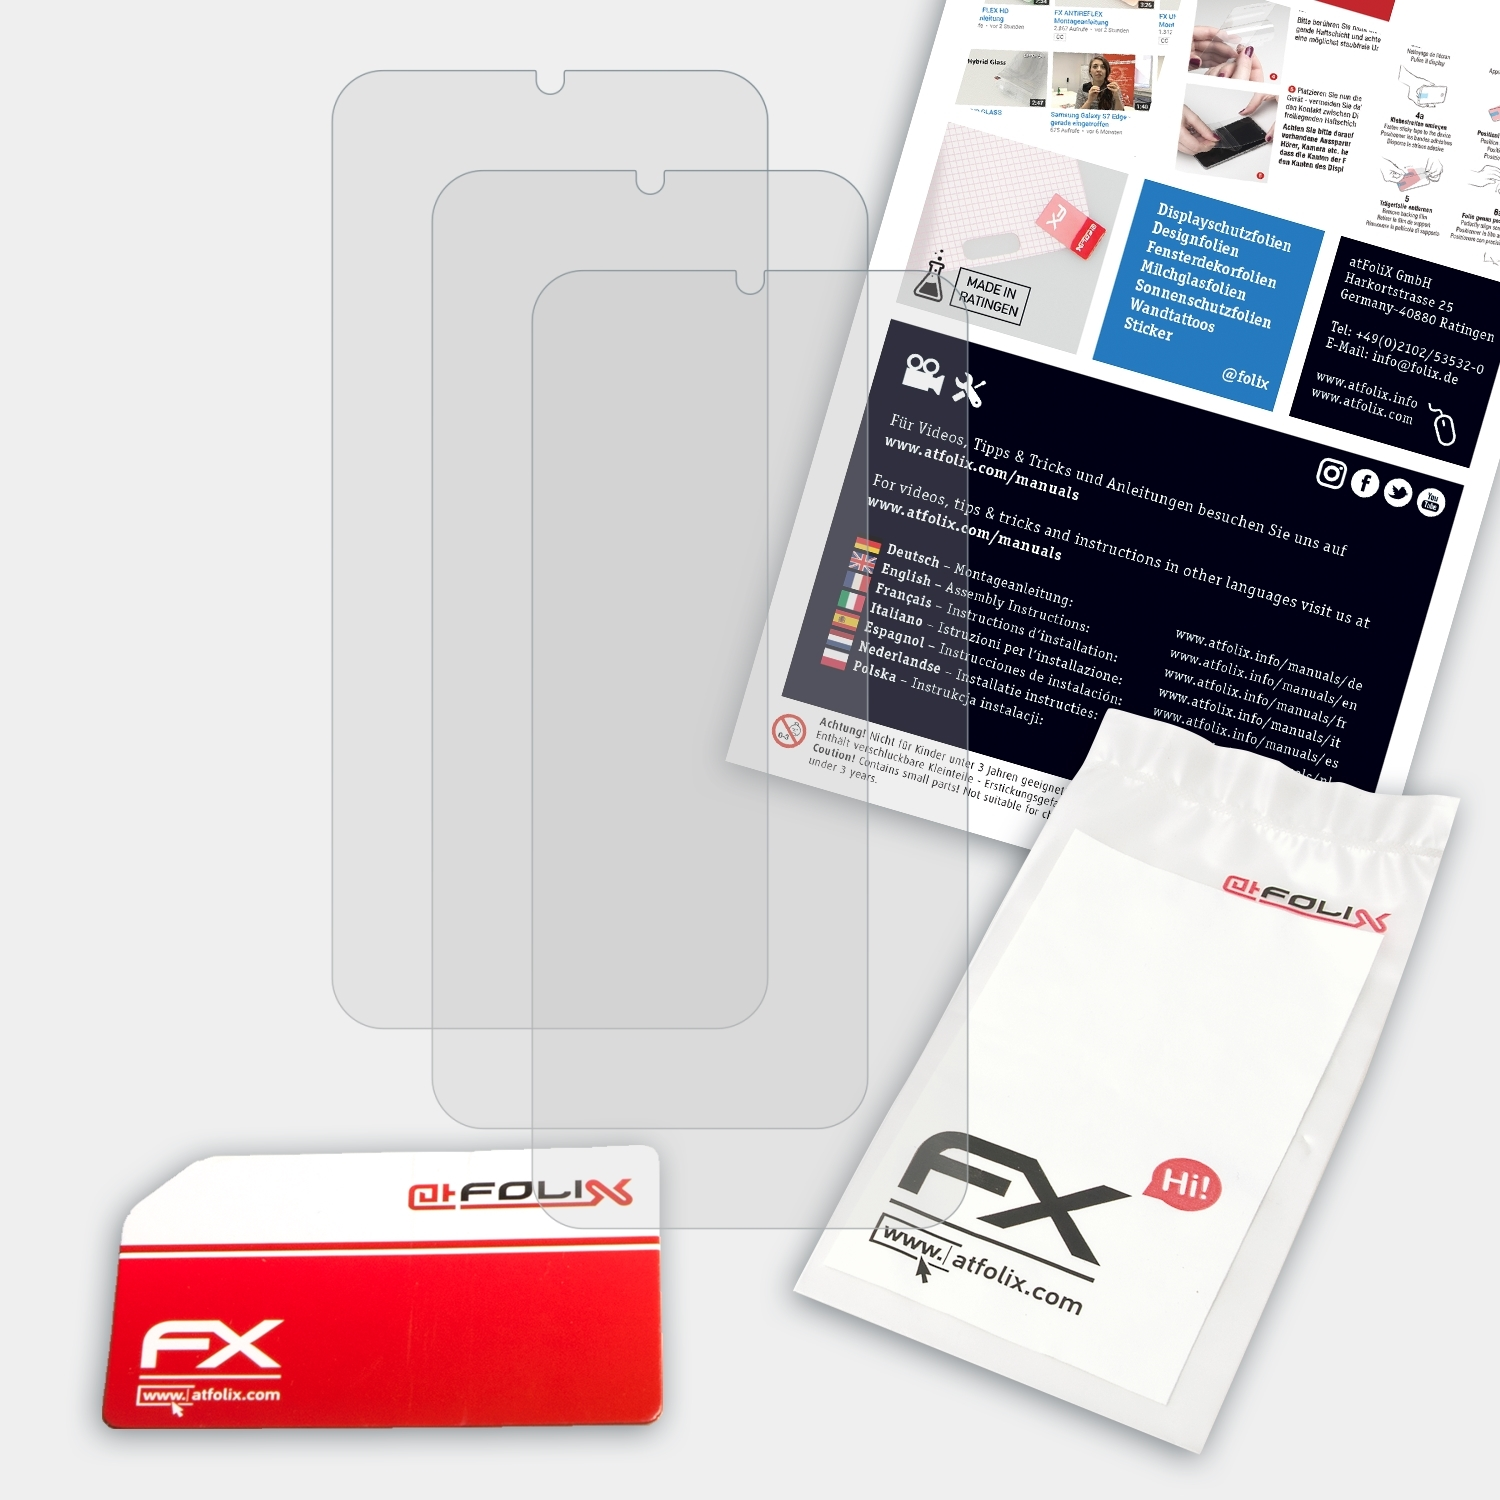 3x Displayschutz(für Tecno Pro) ATFOLIX 12 FX-Antireflex Camon